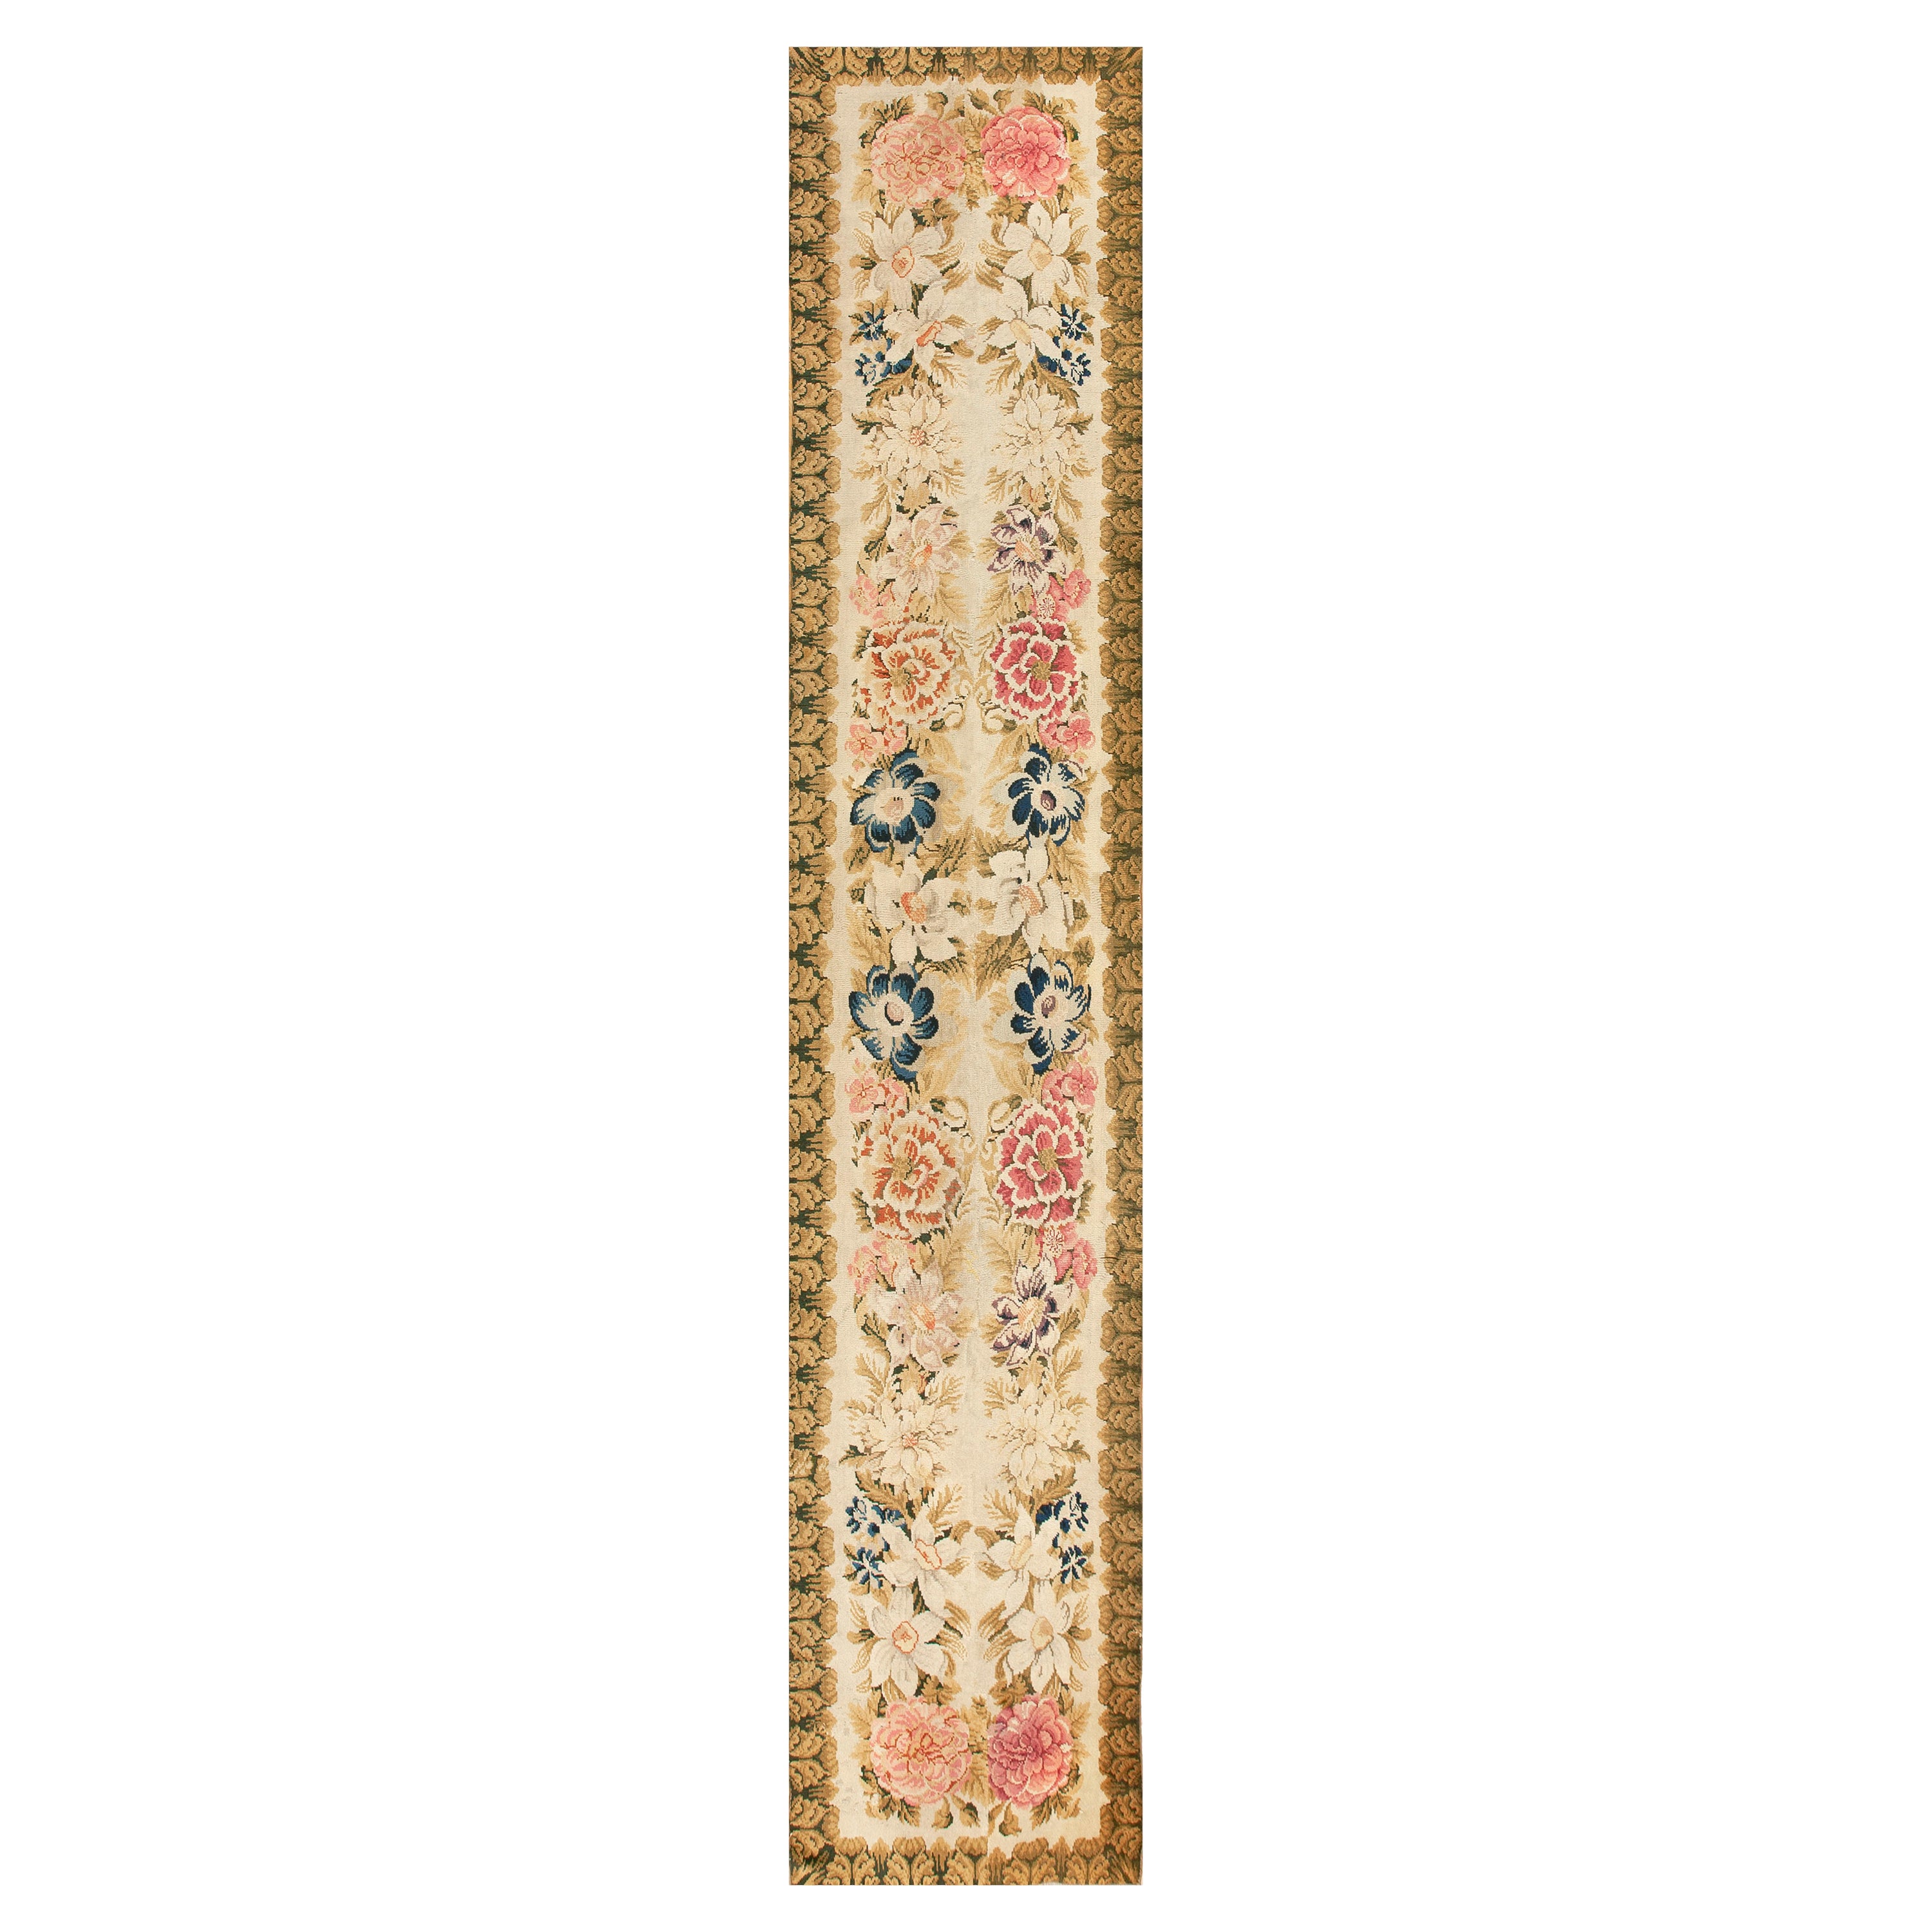 Englischer Axminster-Teppich aus der Mitte des 18. Jahrhunderts ( 3''4"" x 17''4"" - 102 x 528 cm )